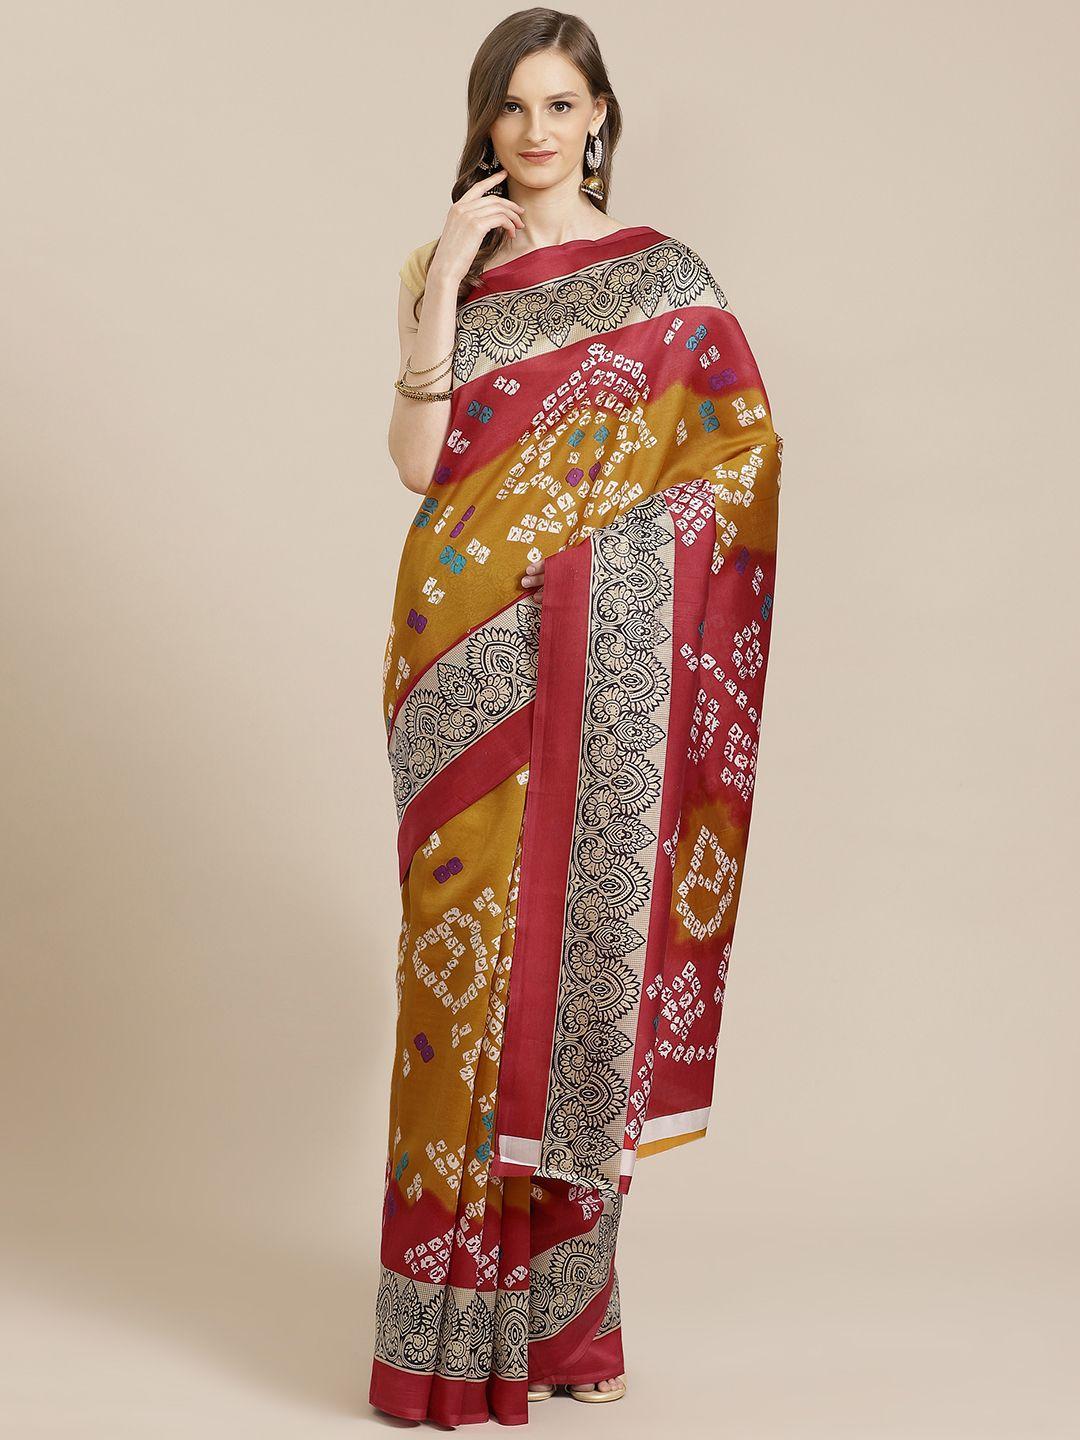 kalini red & mustard yellow art silk bandhani printed saree